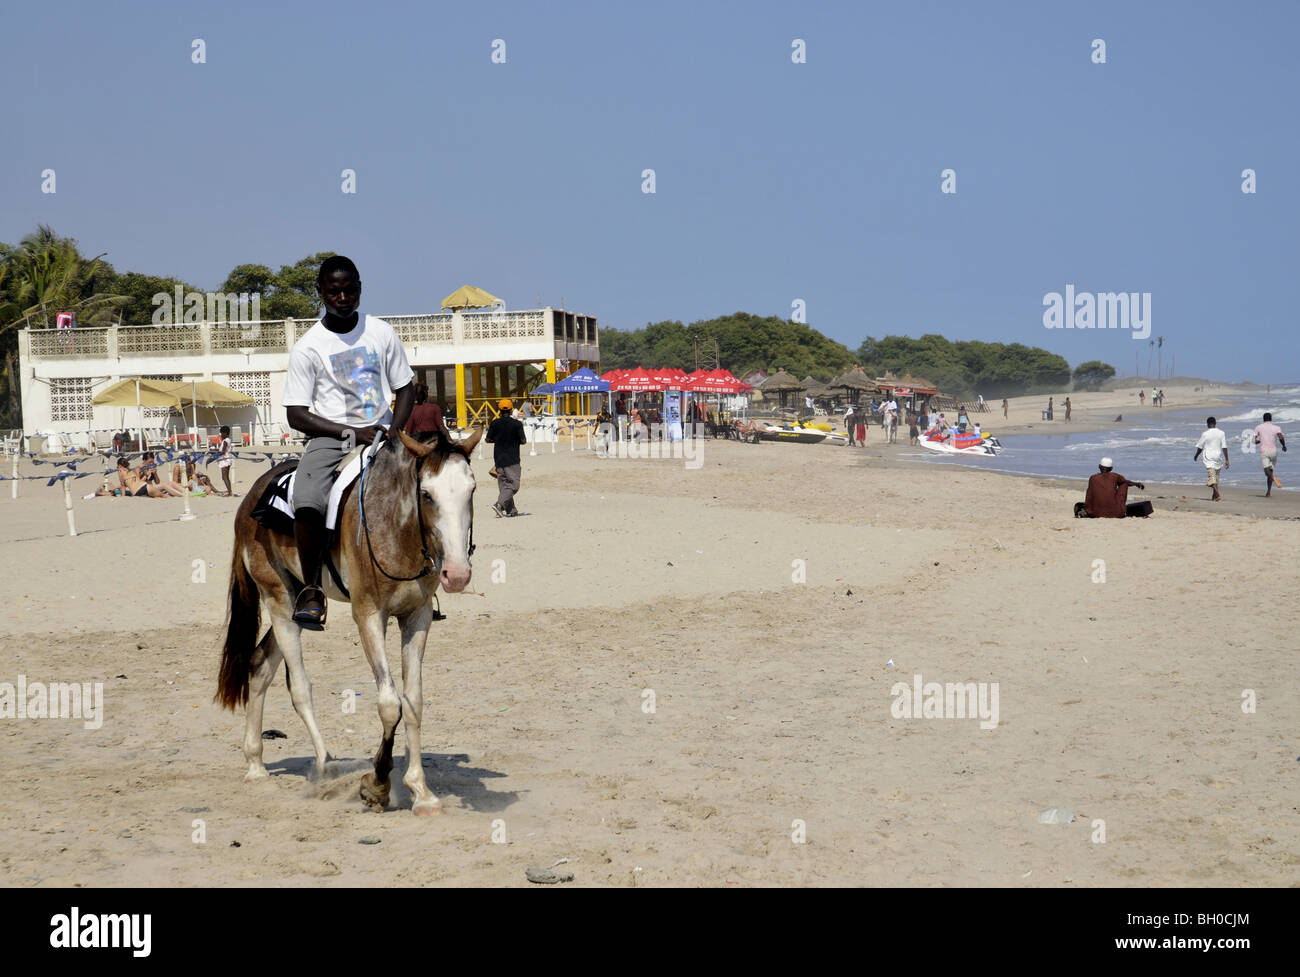 Un homme monte un cheval sur une plage au Ghana Banque D'Images